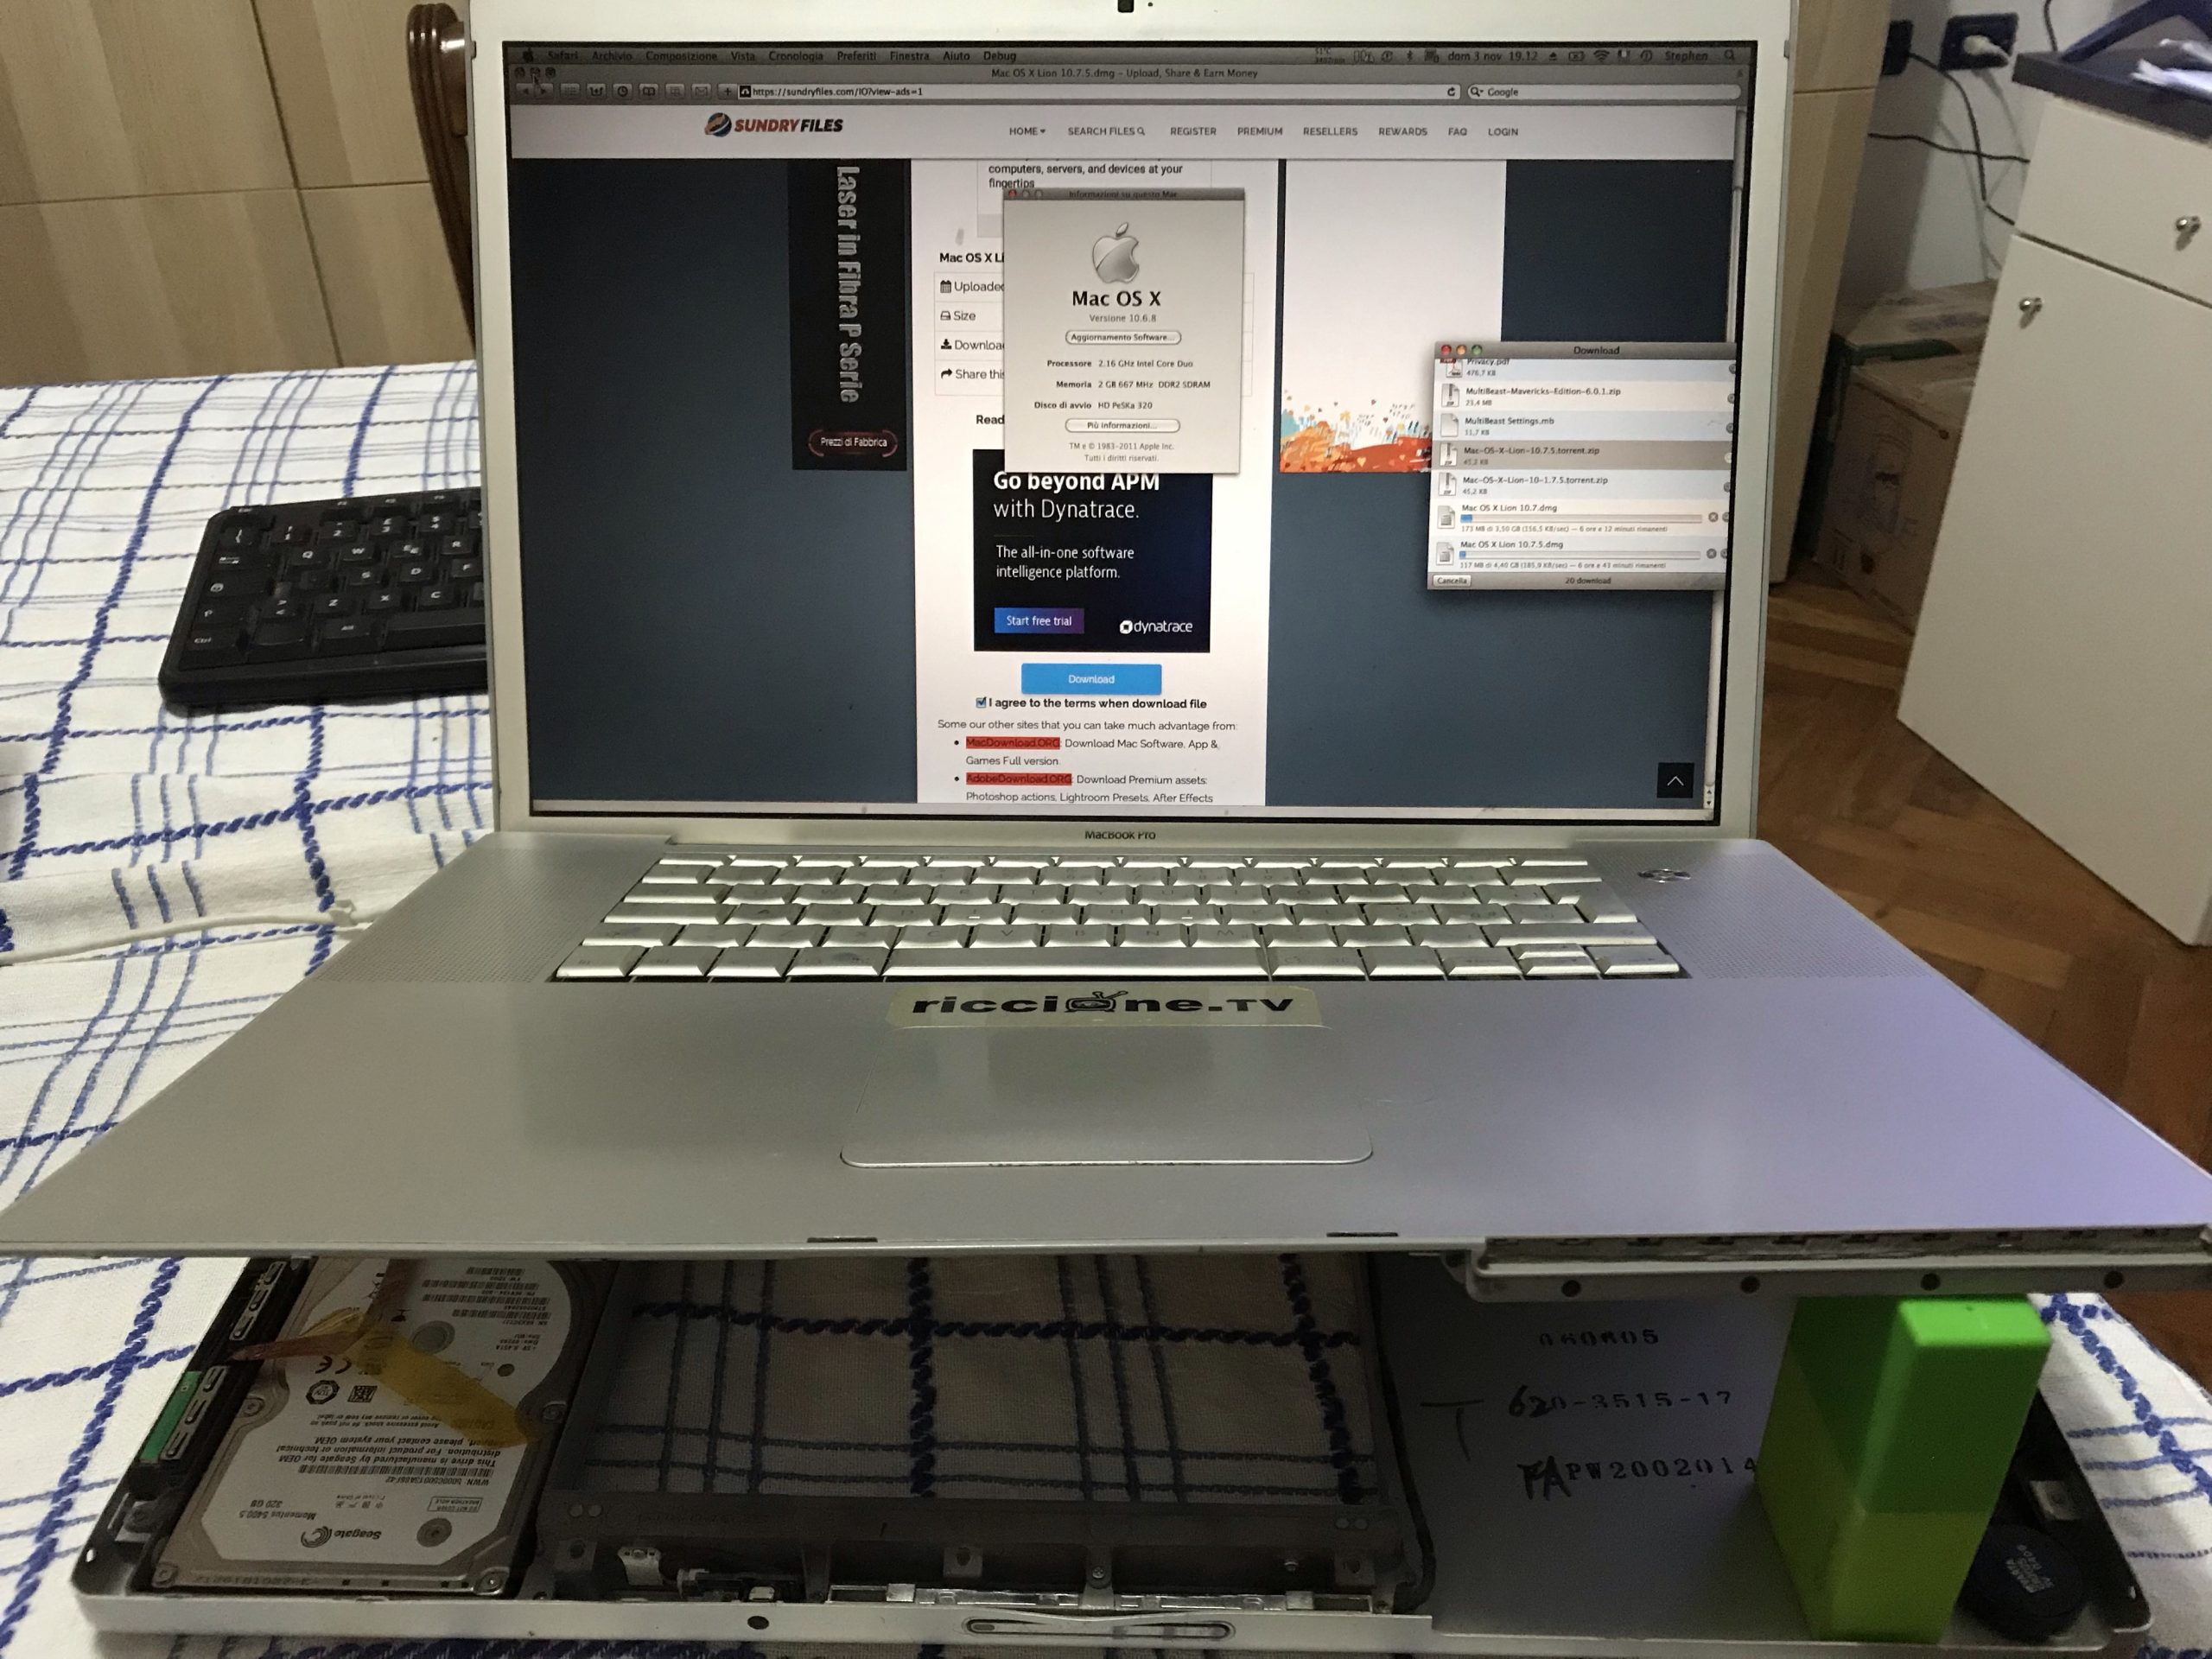 VIDEO Come installare Mac OS X Lion 10.7 su un MacBook Pro 2.16 GHz Intel Core Duo